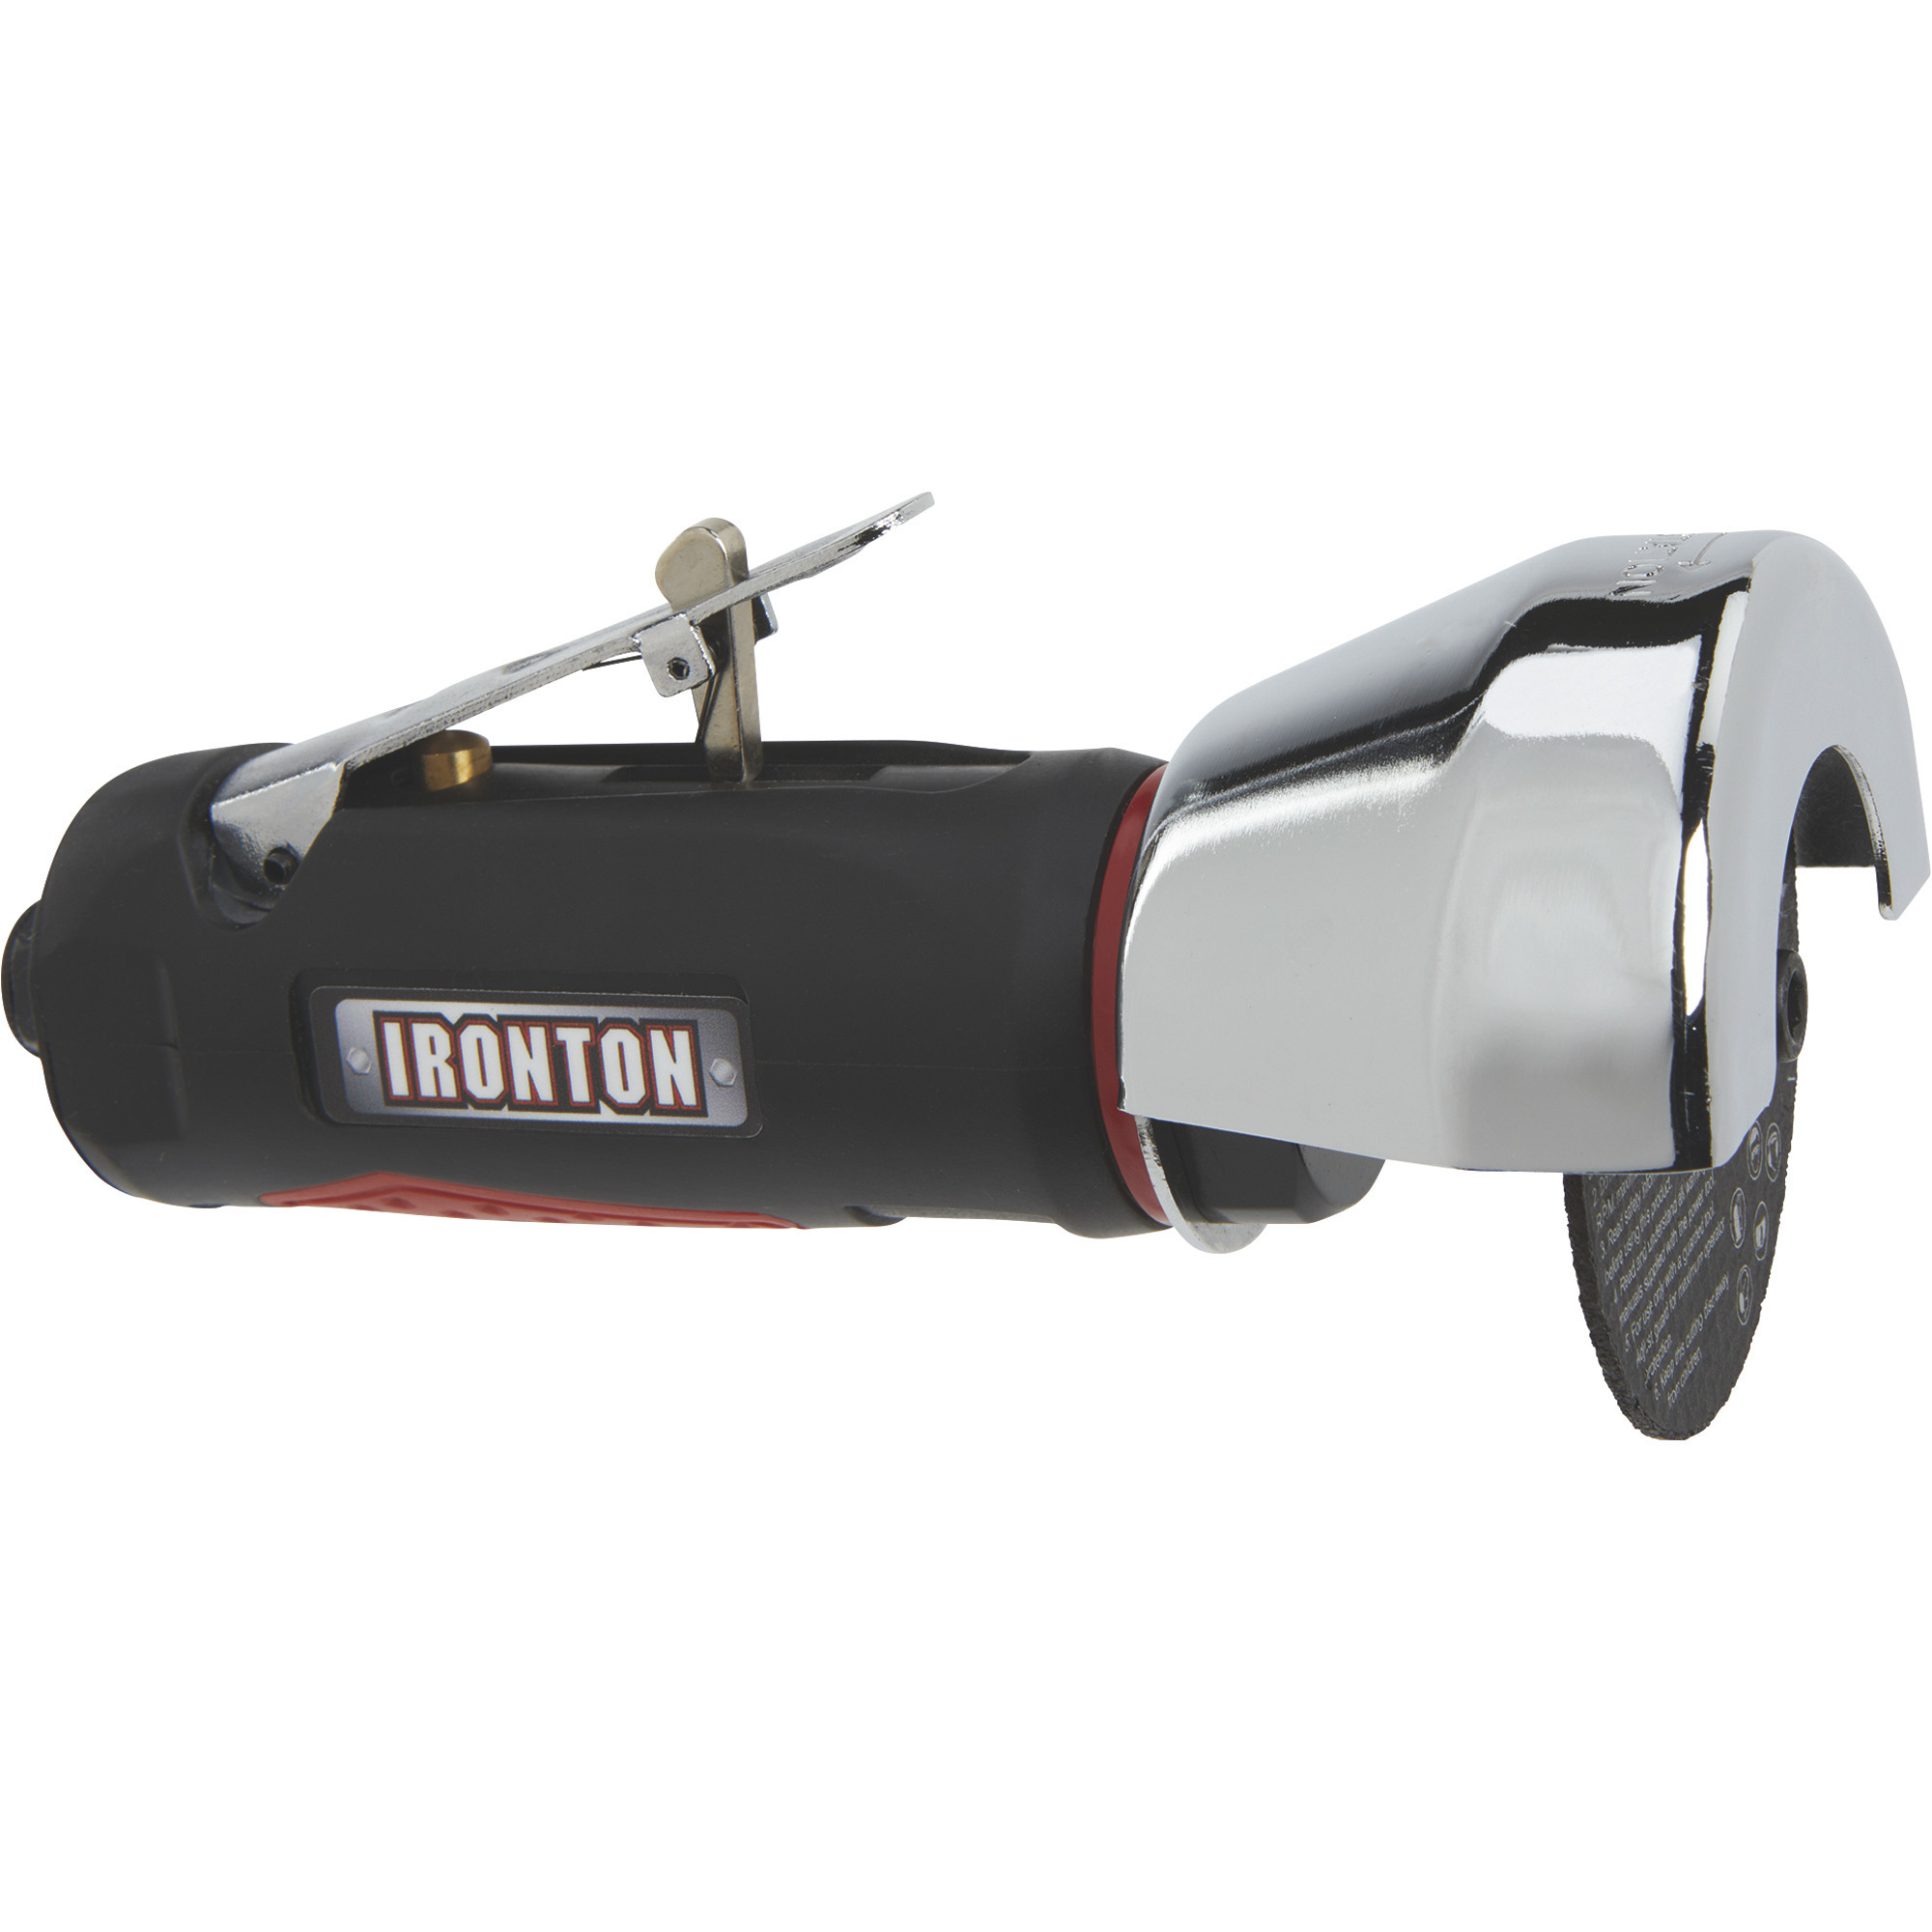 Ironton 3Inch Air Cutoff Tool, 20,000 RPM